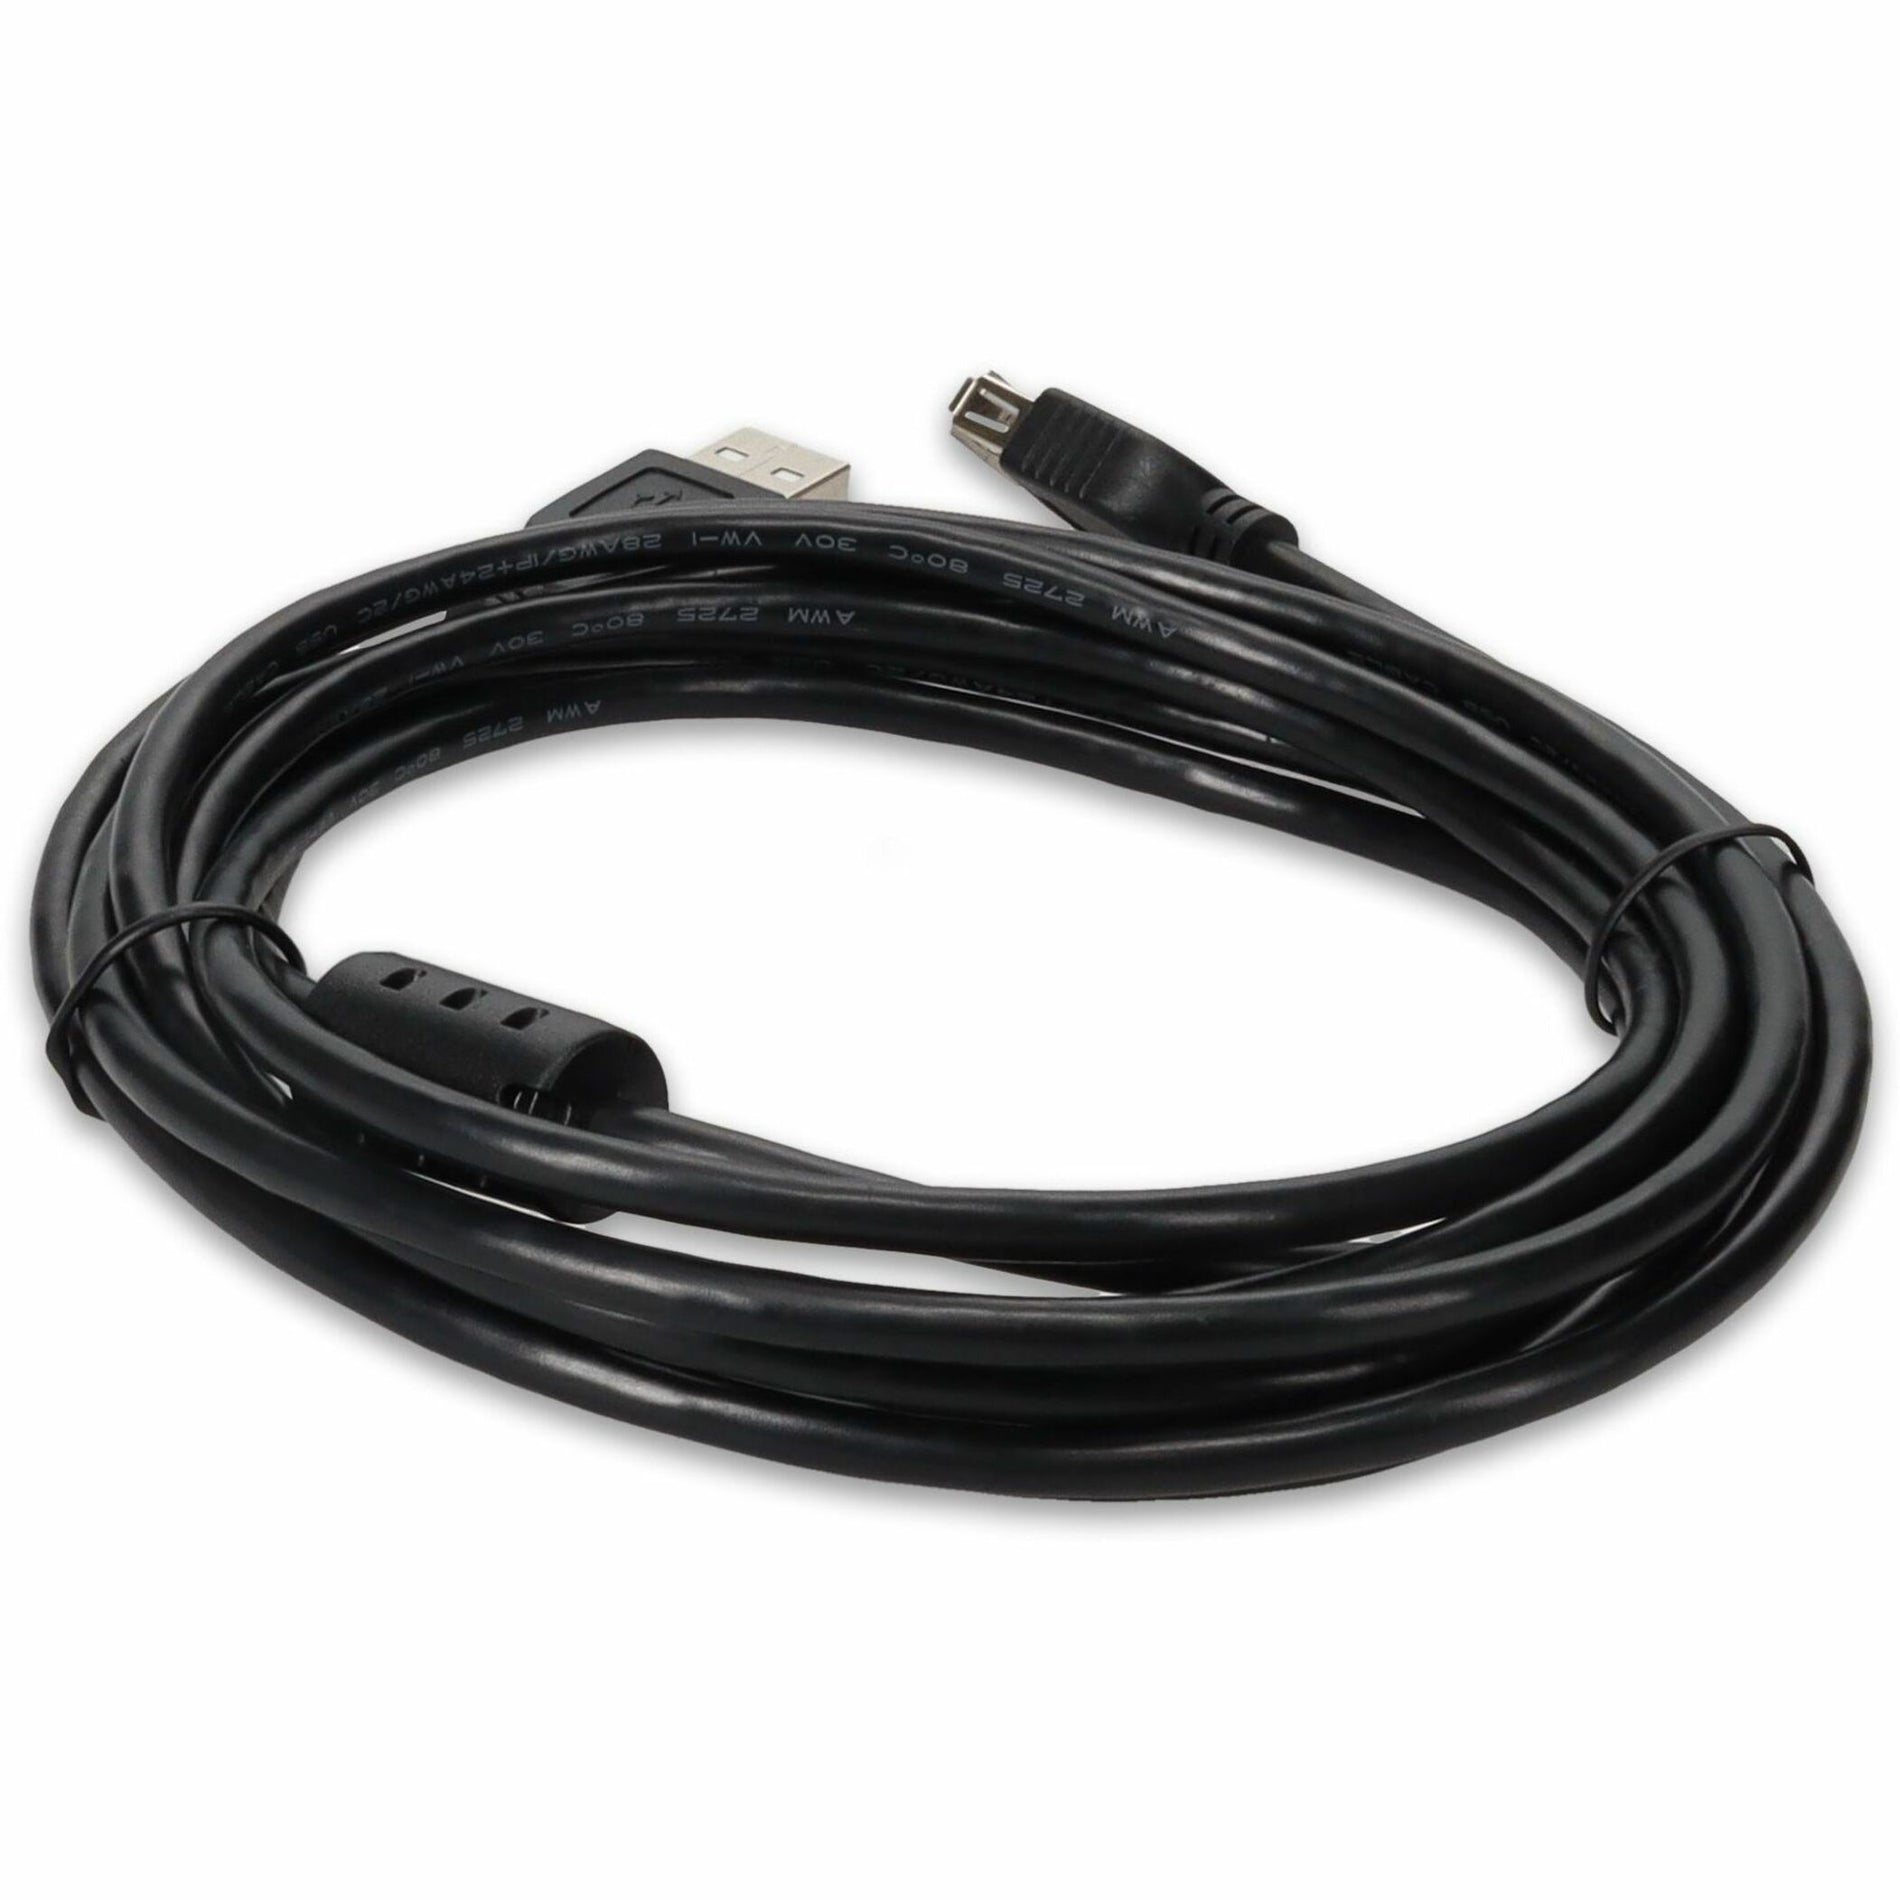 كبل تمديد USB 2.0 A إلى A بطول 10 قدم (3 متر) - ذكر إلى أنثى، أسود الملحق AddOn USBEXTAA10FB